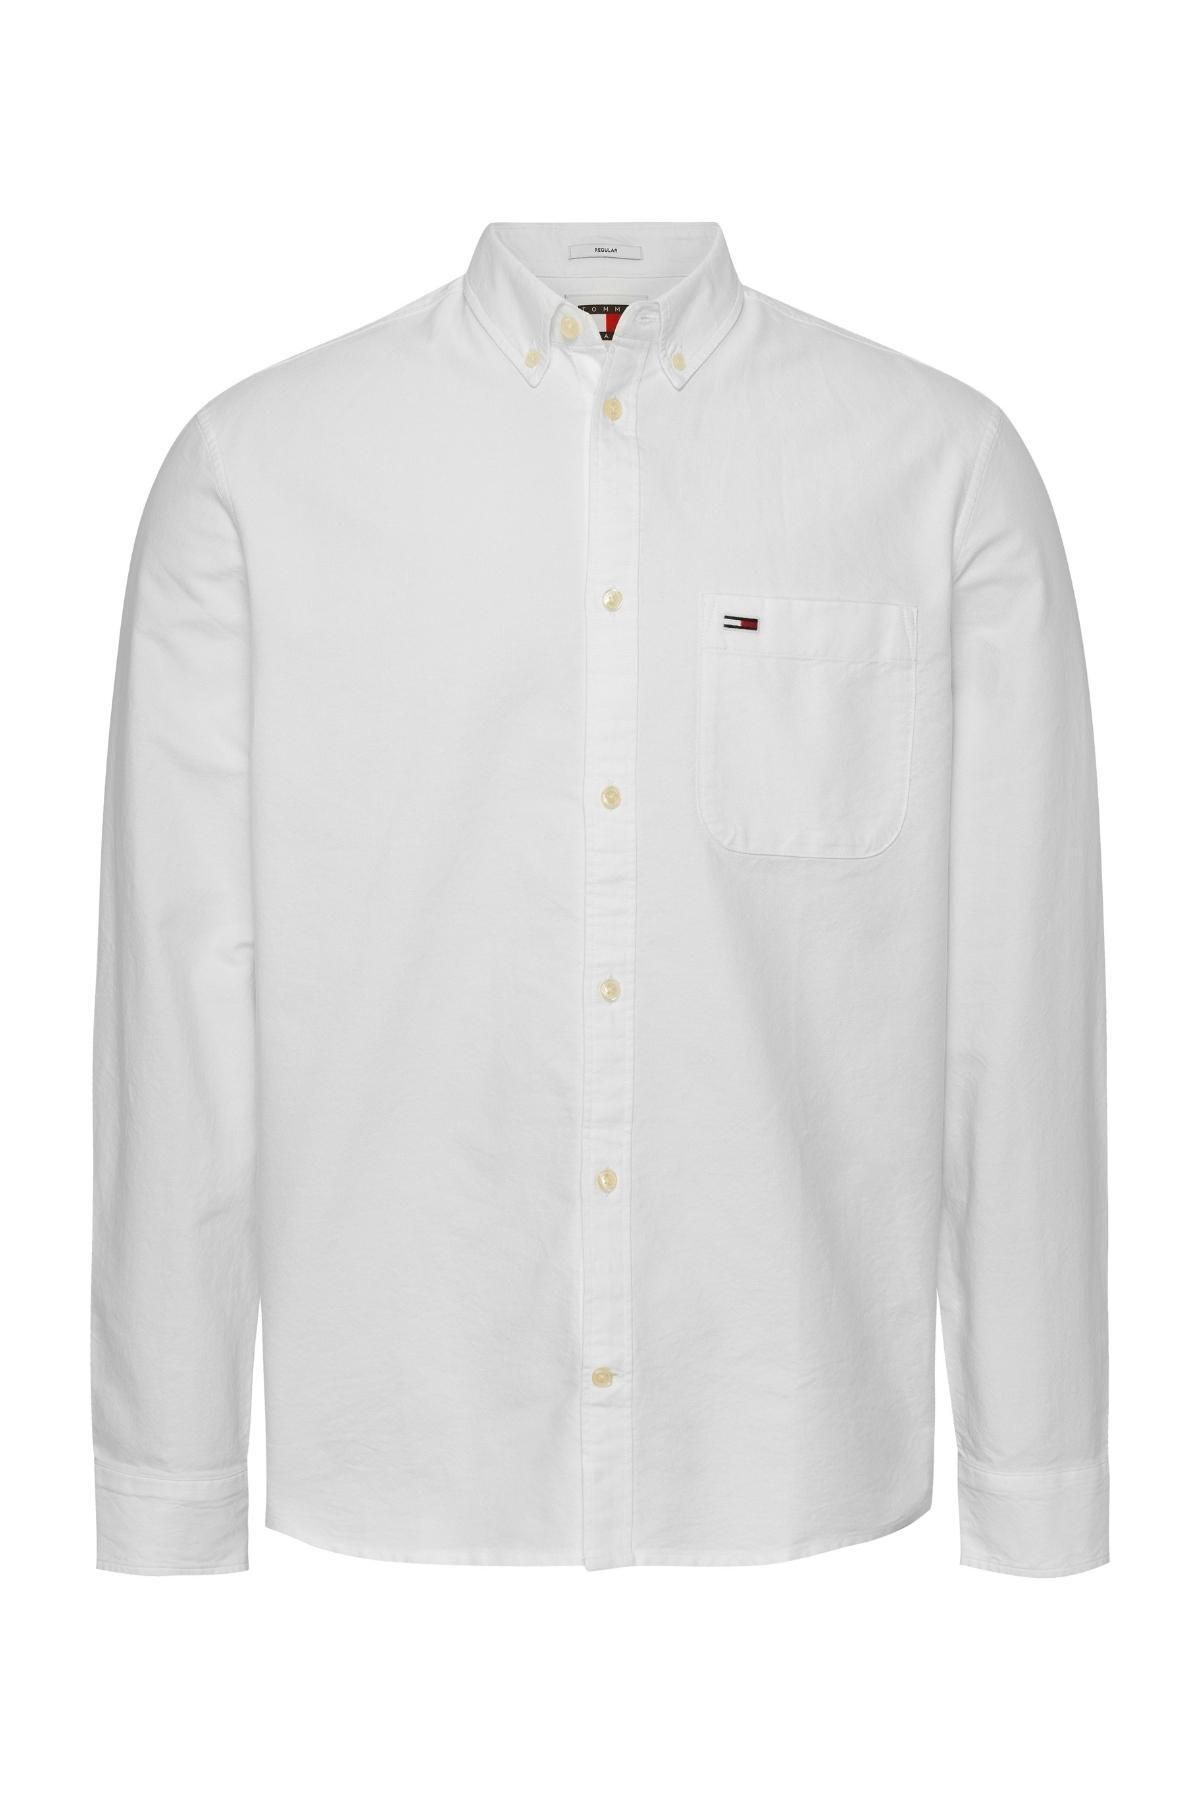 Tommy Hilfiger Erkek Marka Logolu Günlük Kullanıma Uygun Beyaz Gömlek Dm0dm18335-Ybr